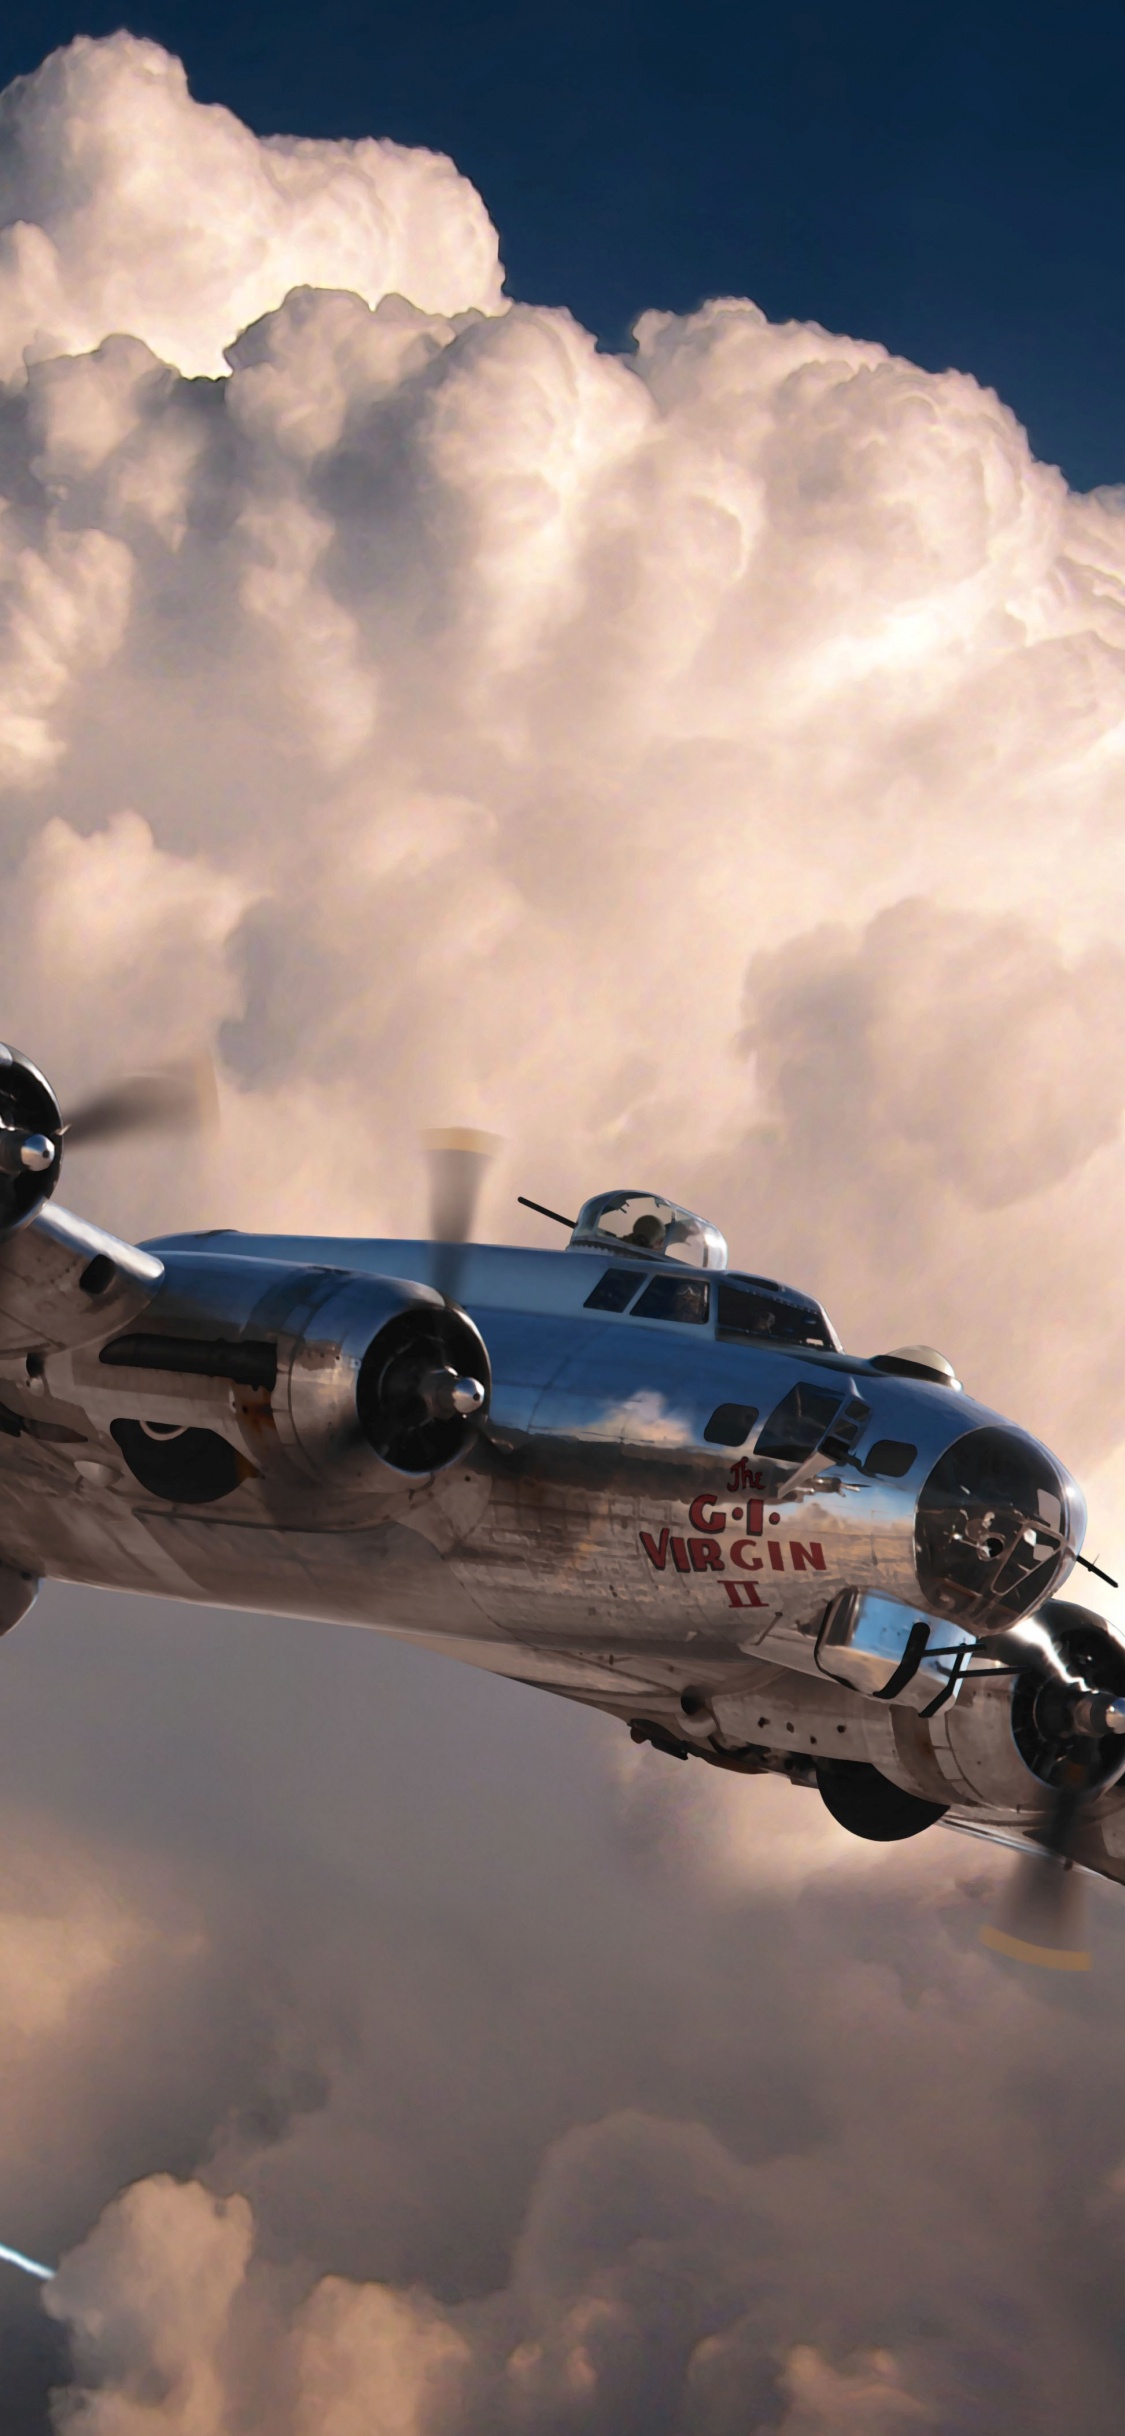 第二次世界大战, 世界大战, 波音公司b-17飞行堡垒, 波音公司B-29超级空中堡垒, 航空 壁纸 1125x2436 允许